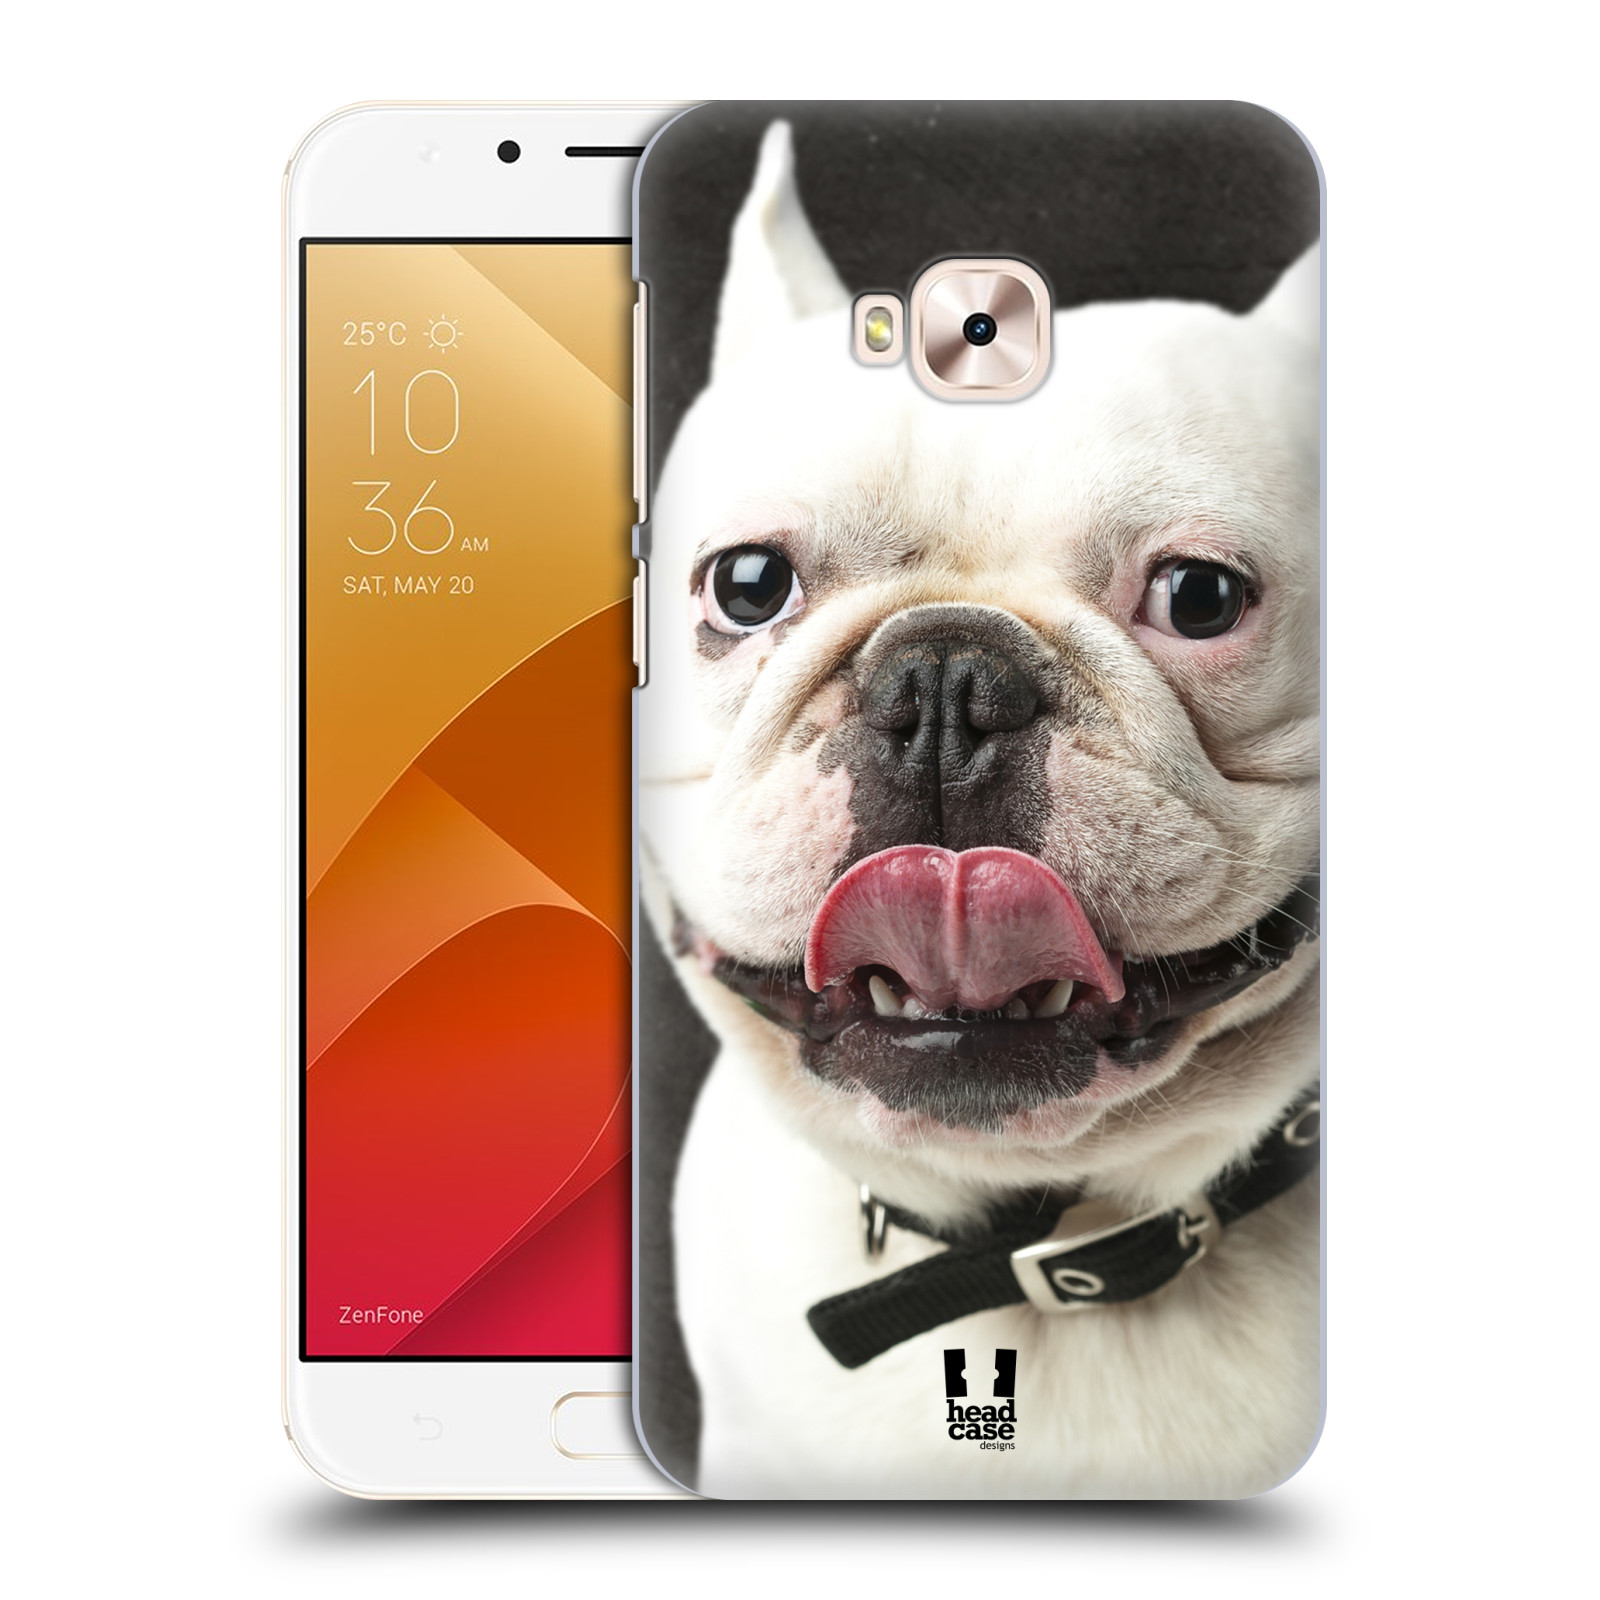 HEAD CASE plastový obal na mobil Asus Zenfone 4 Selfie Pro ZD552KL vzor Legrační zvířátka pejsek s vyplazeným jazykem BULDOK